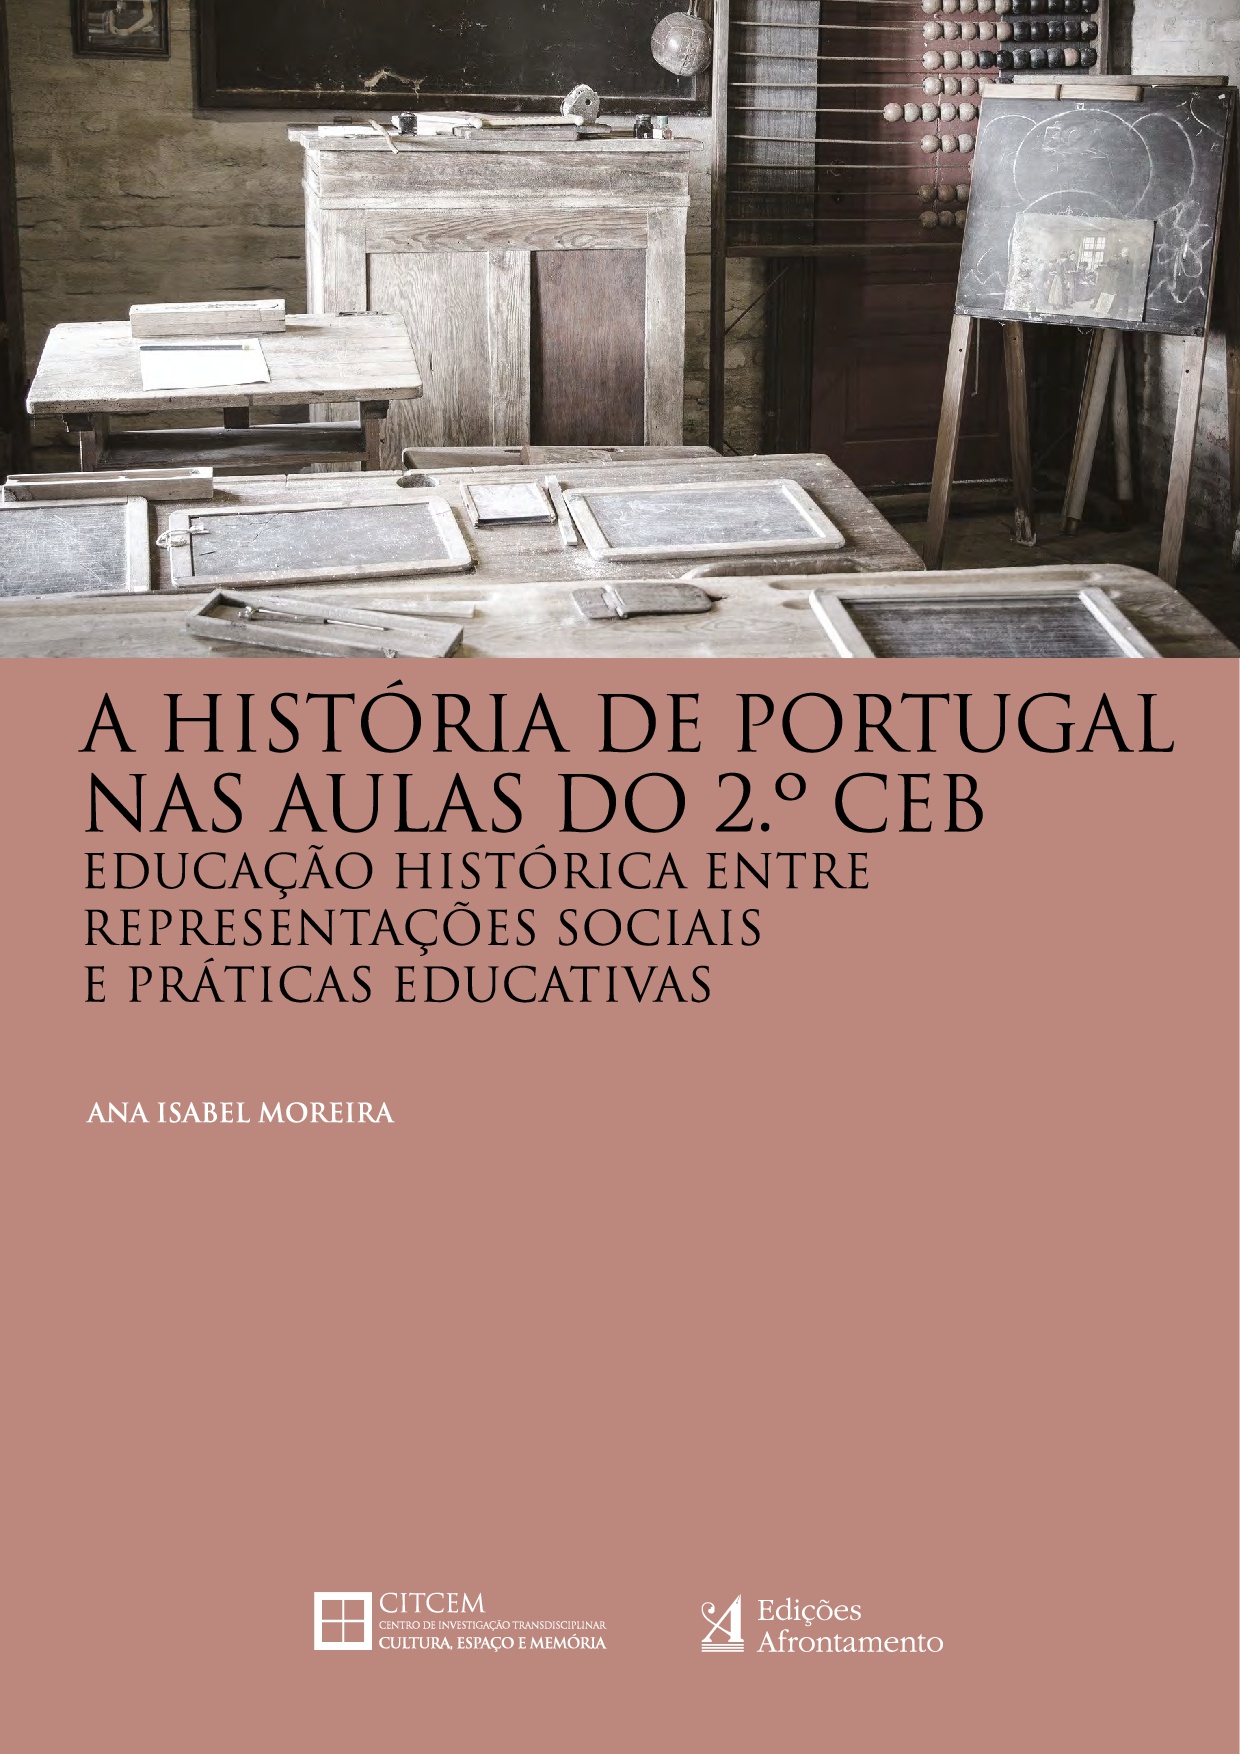 Historia_de_Portugal_Ana_Isabel_Moreira